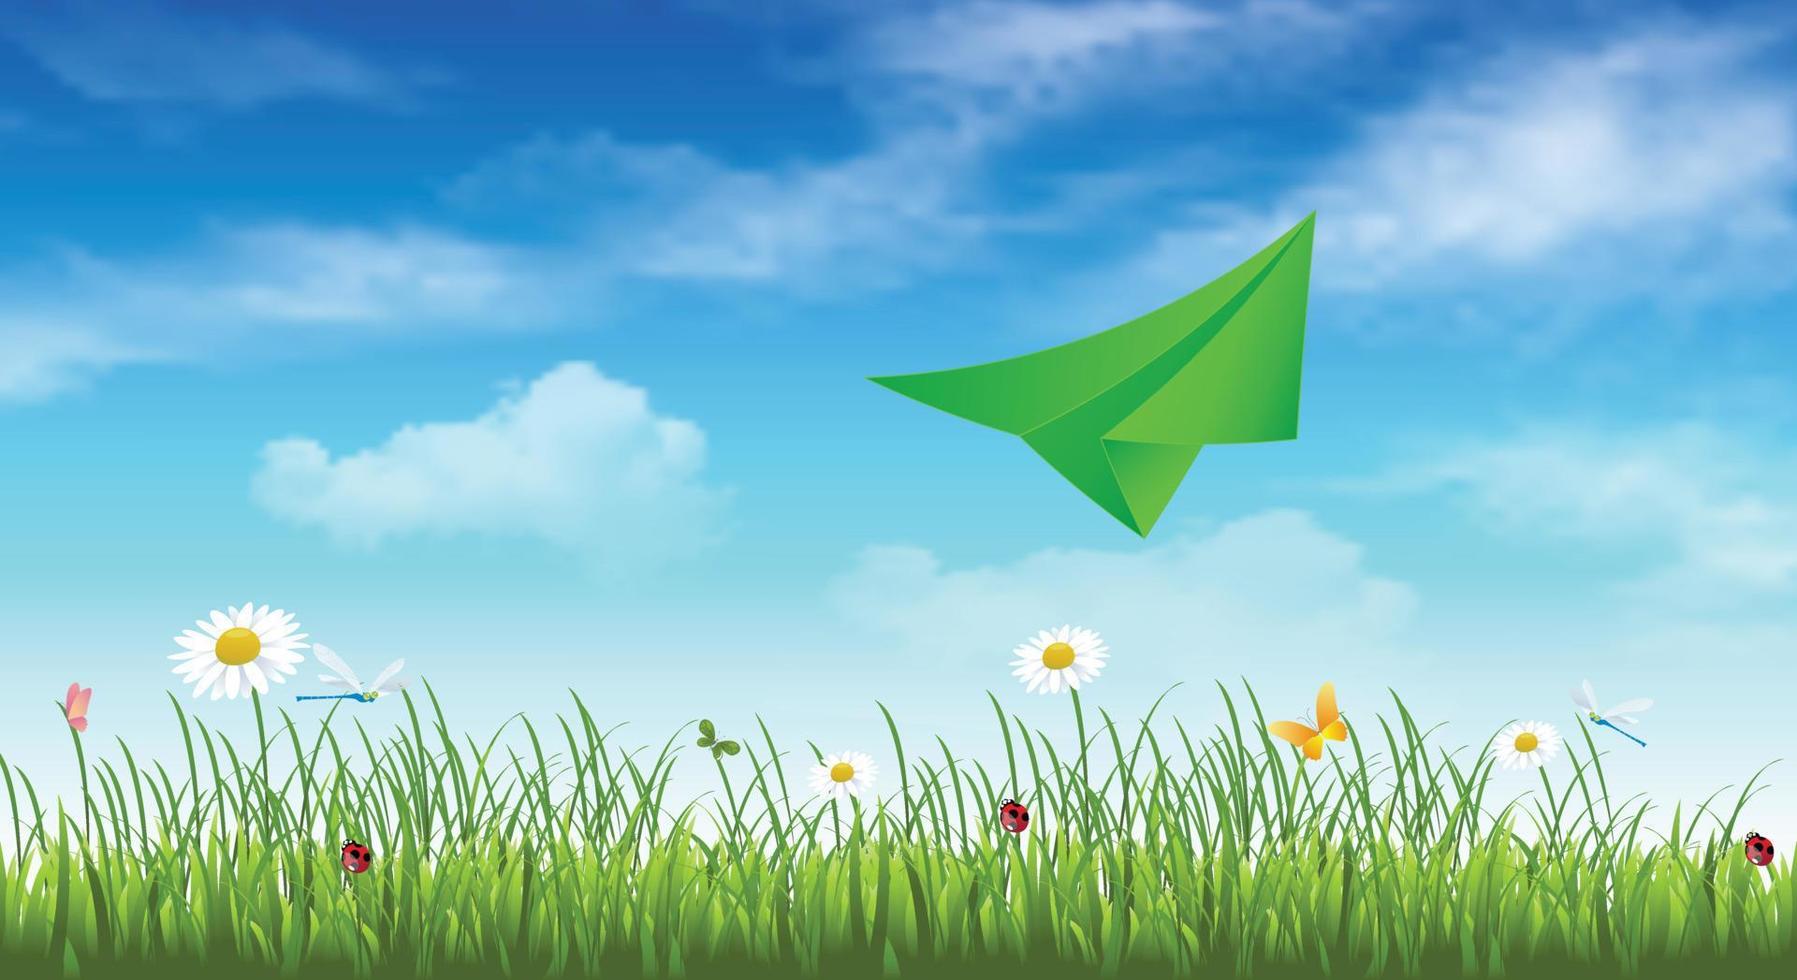 Groenboek vliegtuig op een blauwe hemelachtergrond met wolken, groen gras en bloemen. lente achtergrond. reisbanner. ruimte kopiëren. vector illustratie